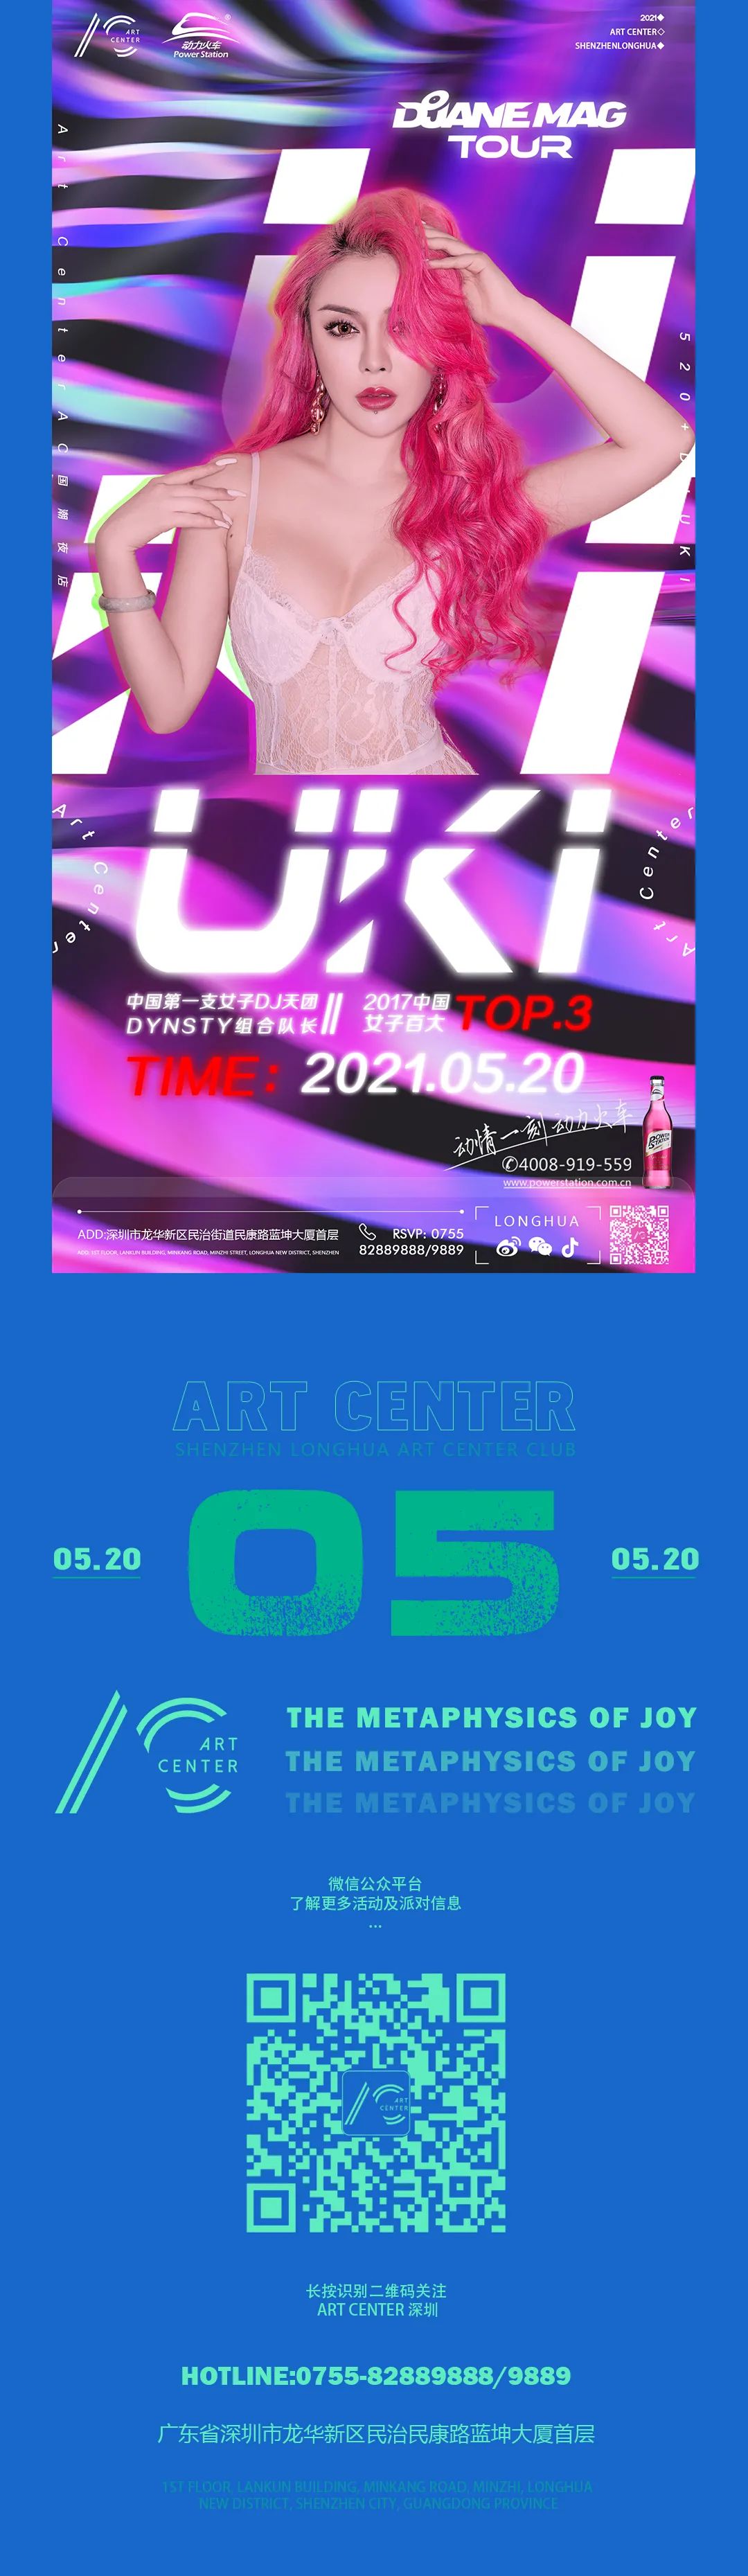 05.20|中国女子百大TOP 3 DJ UKI 释放独特魅力 点燃电音热浪-深圳AC酒吧/ART CENTER